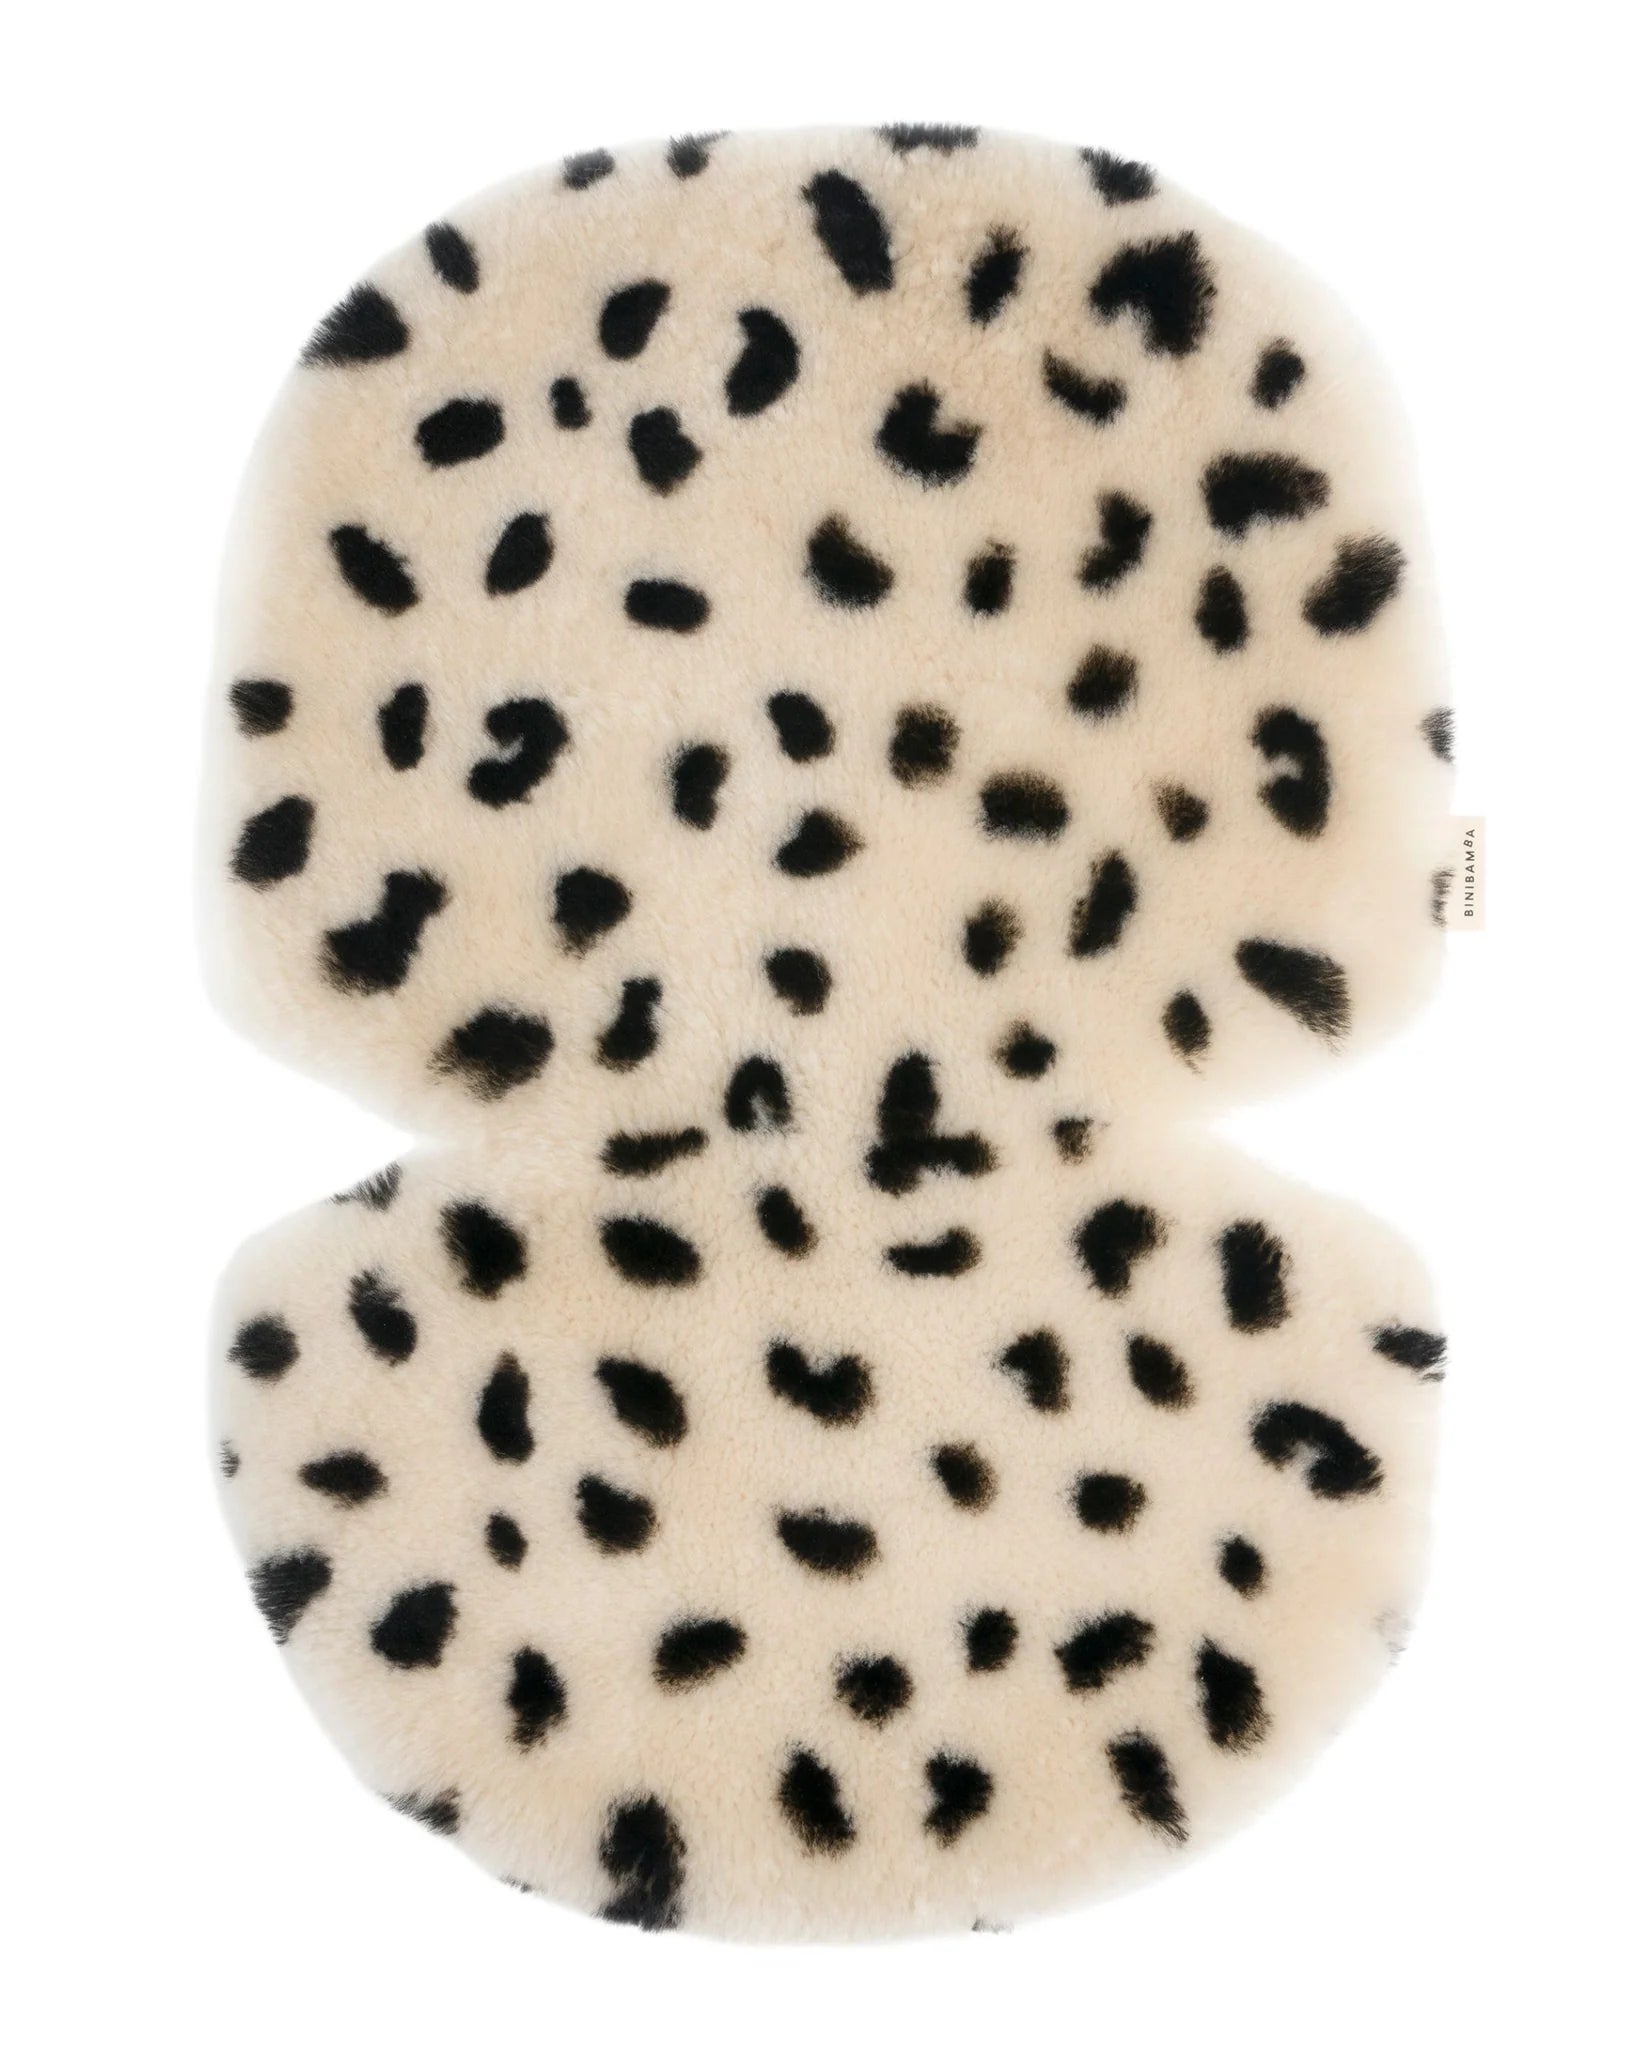 BINIBAMBA Sheepskin Snuggler Leopard Snuggler - Hola BB